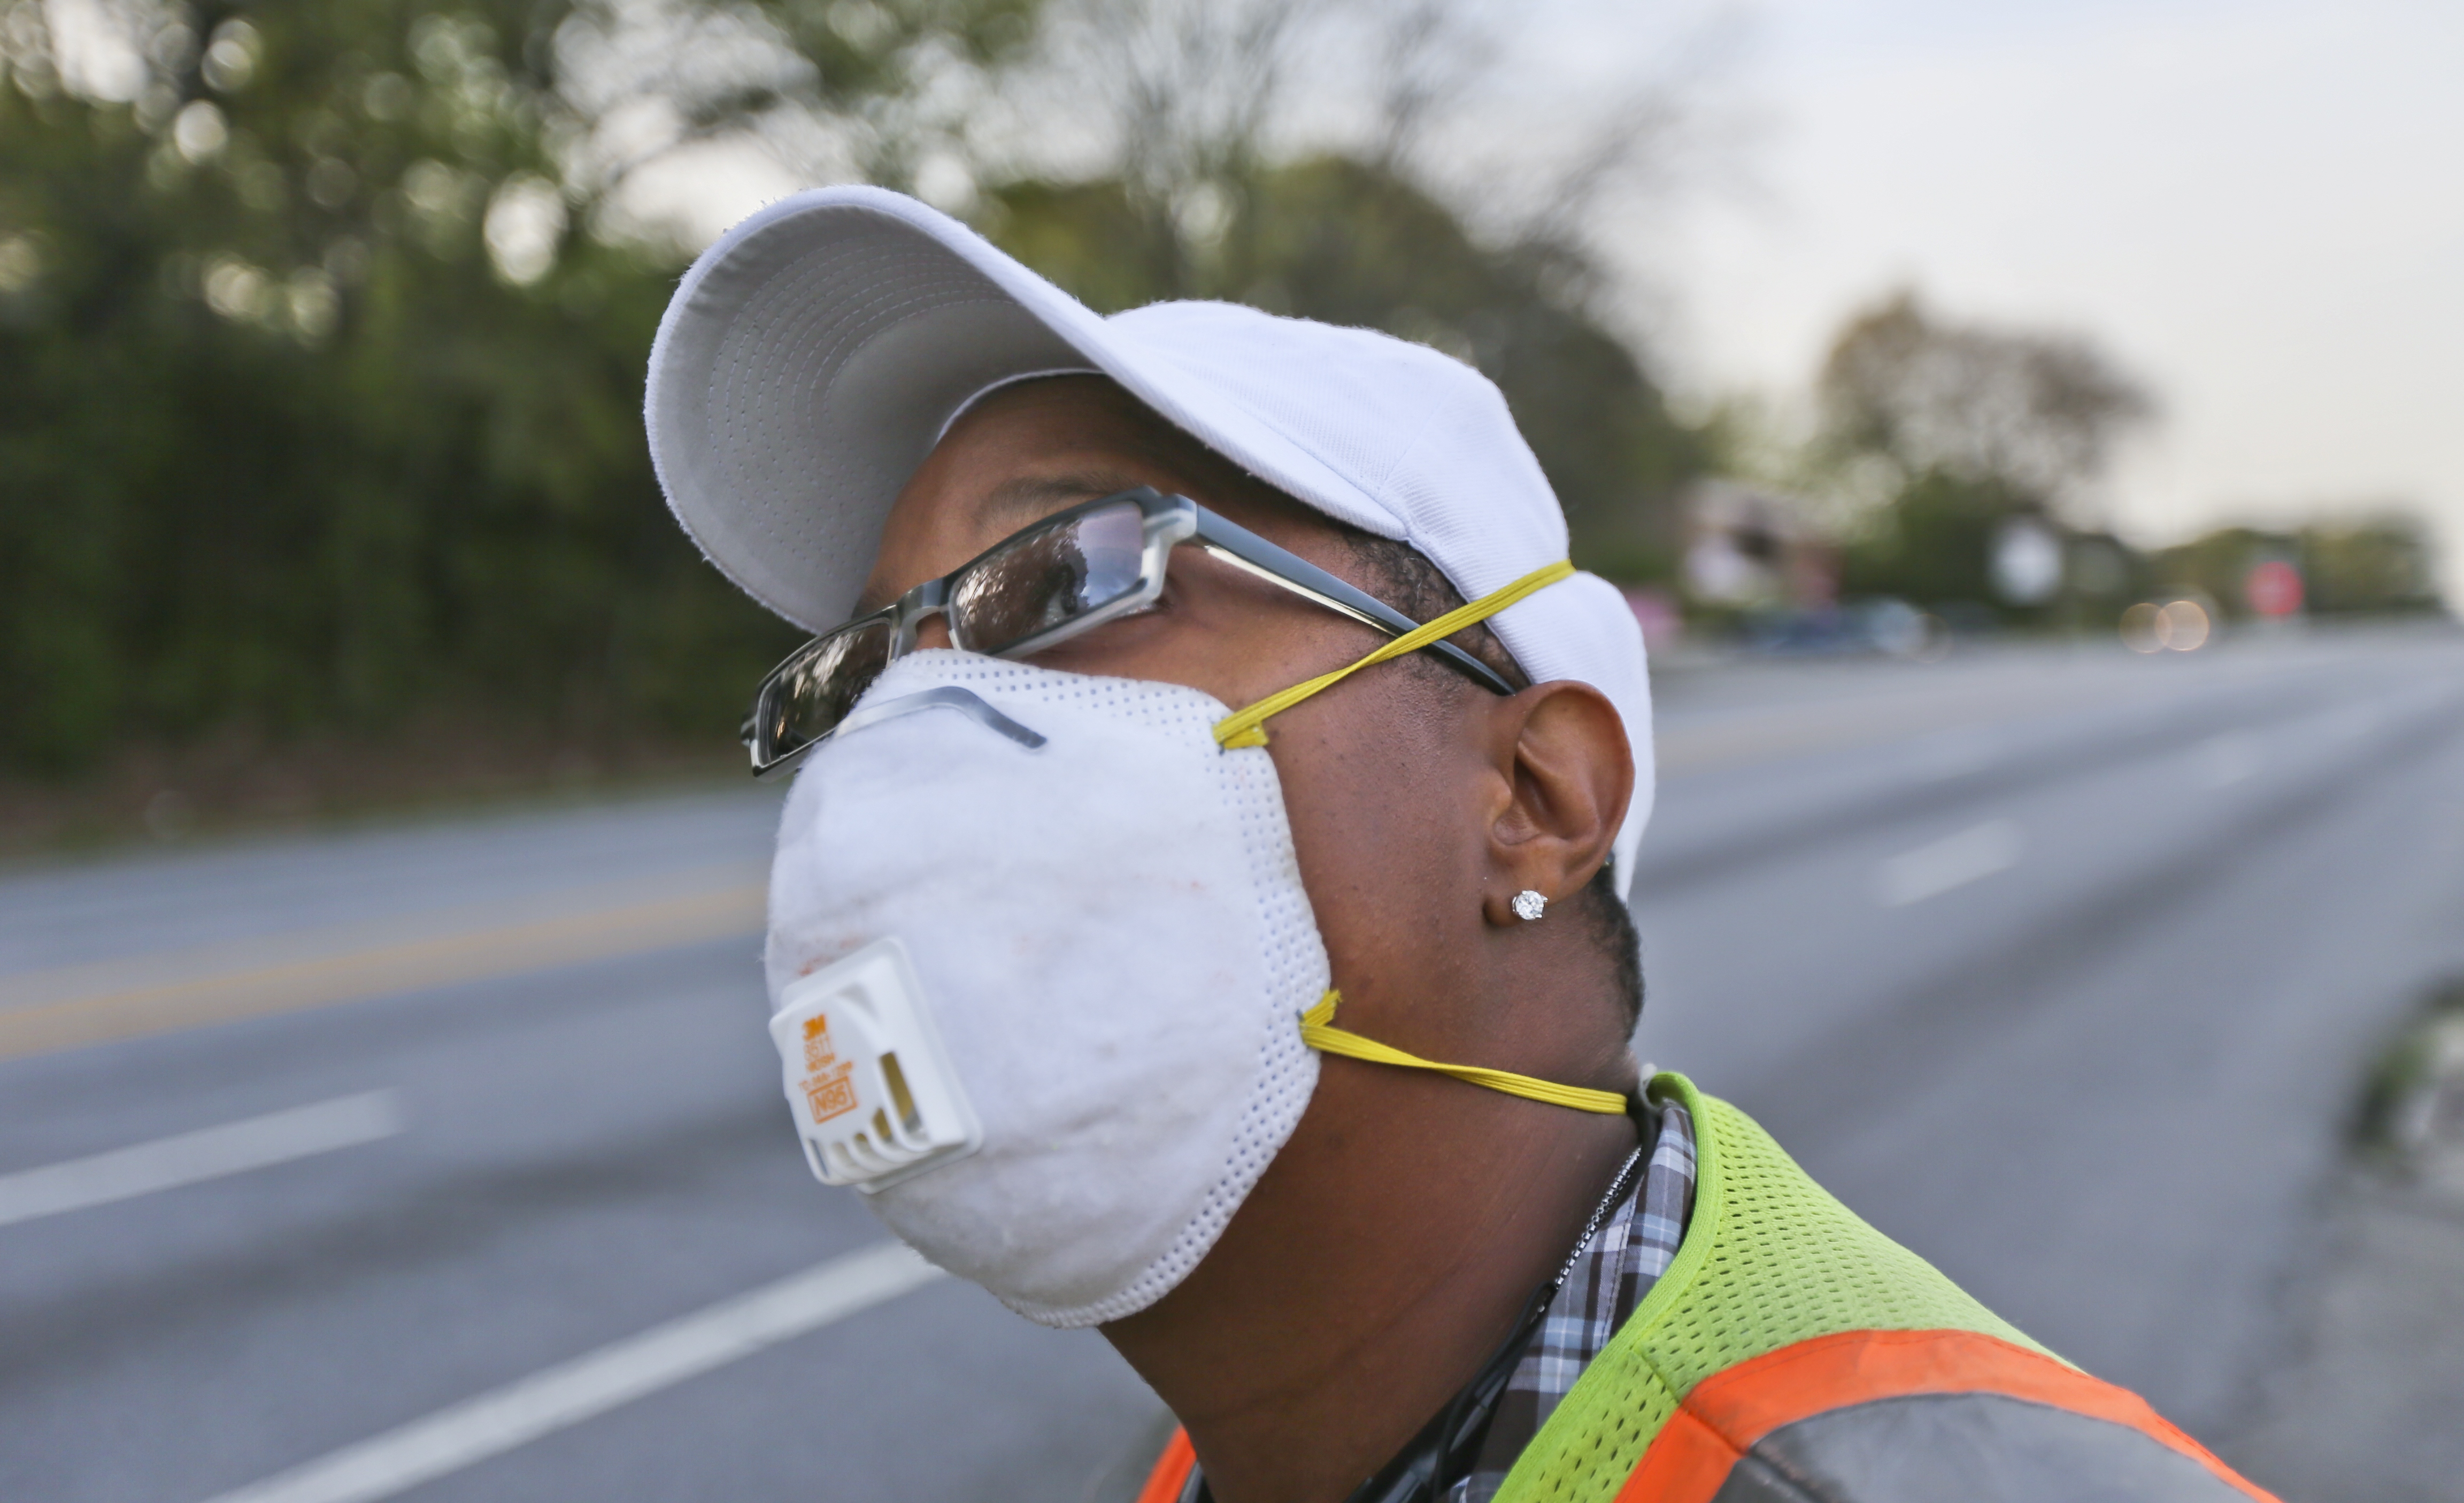 Kentucky wind chill: Masks in public illegal in Louisville